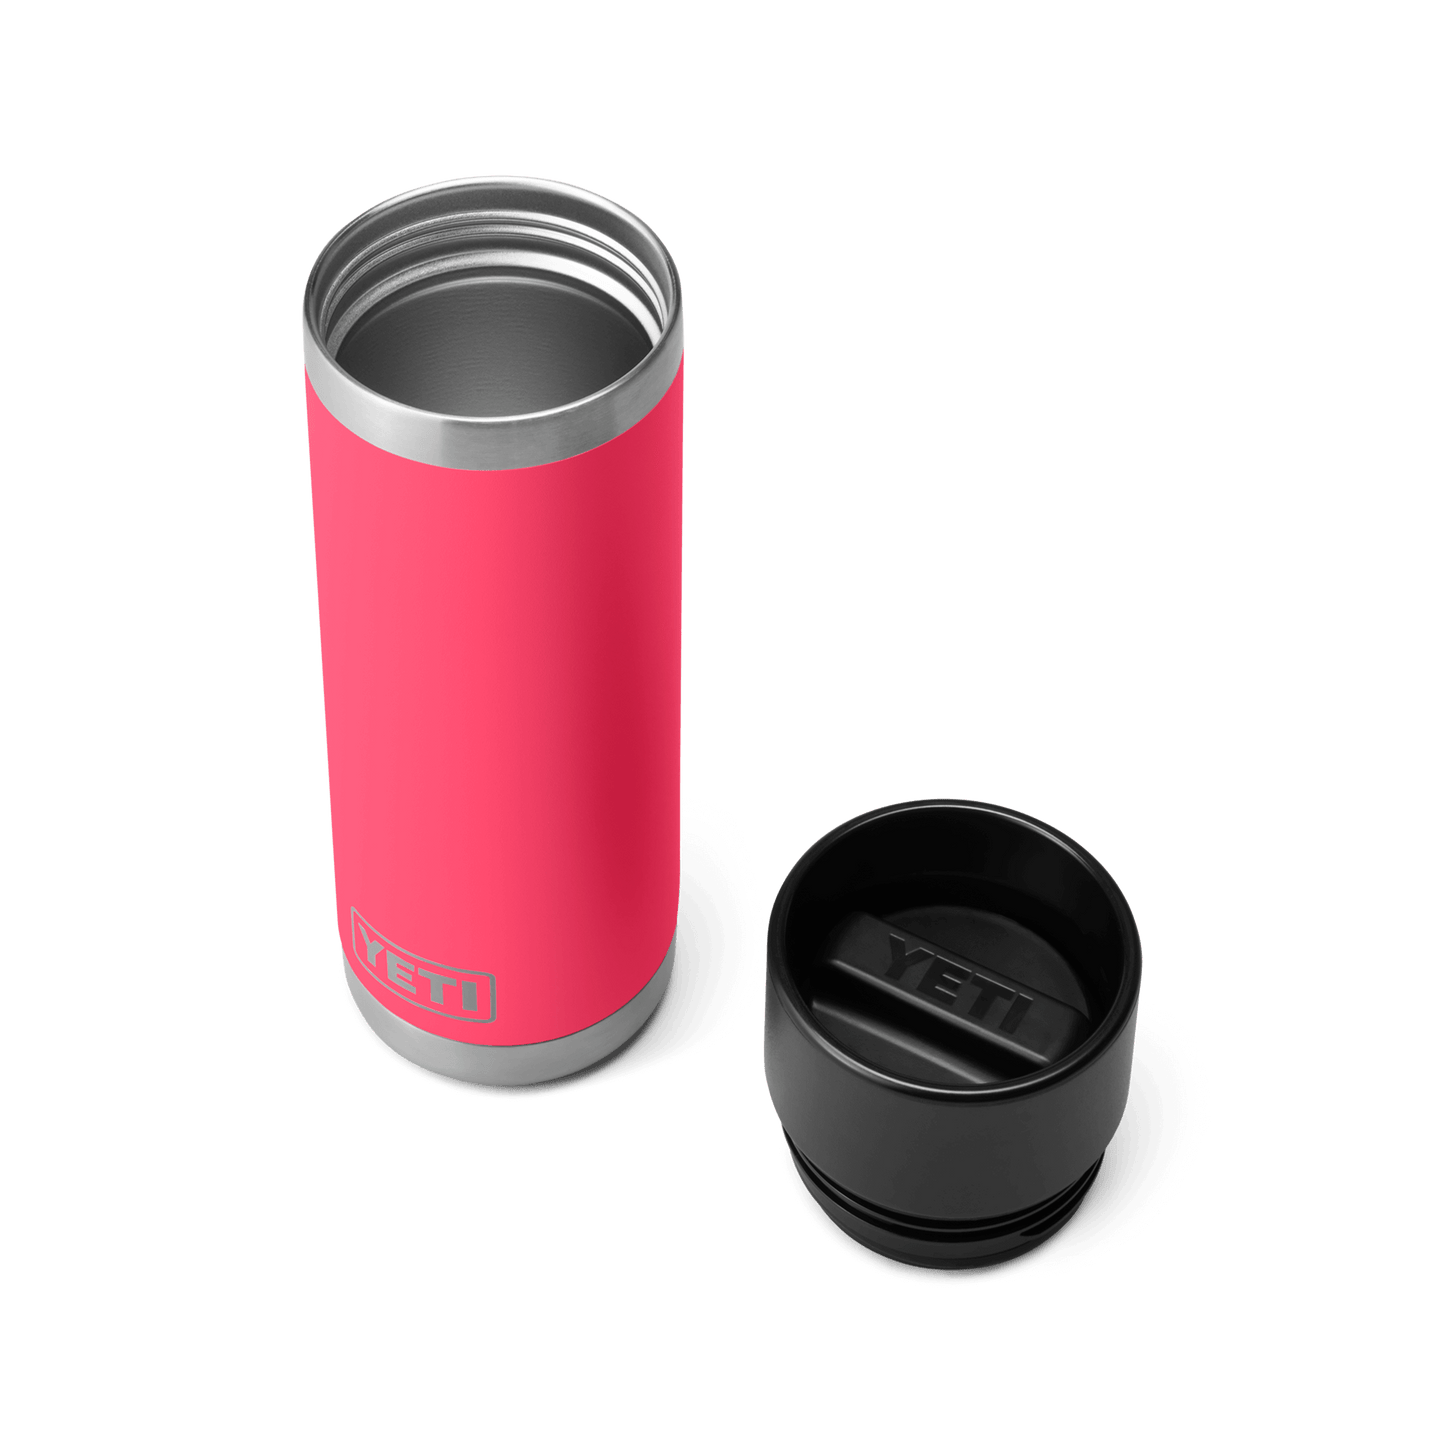 YETI Rambler® 18 oz Flasche mit HotShot-Verschluss (532 ml) Bimini Pink